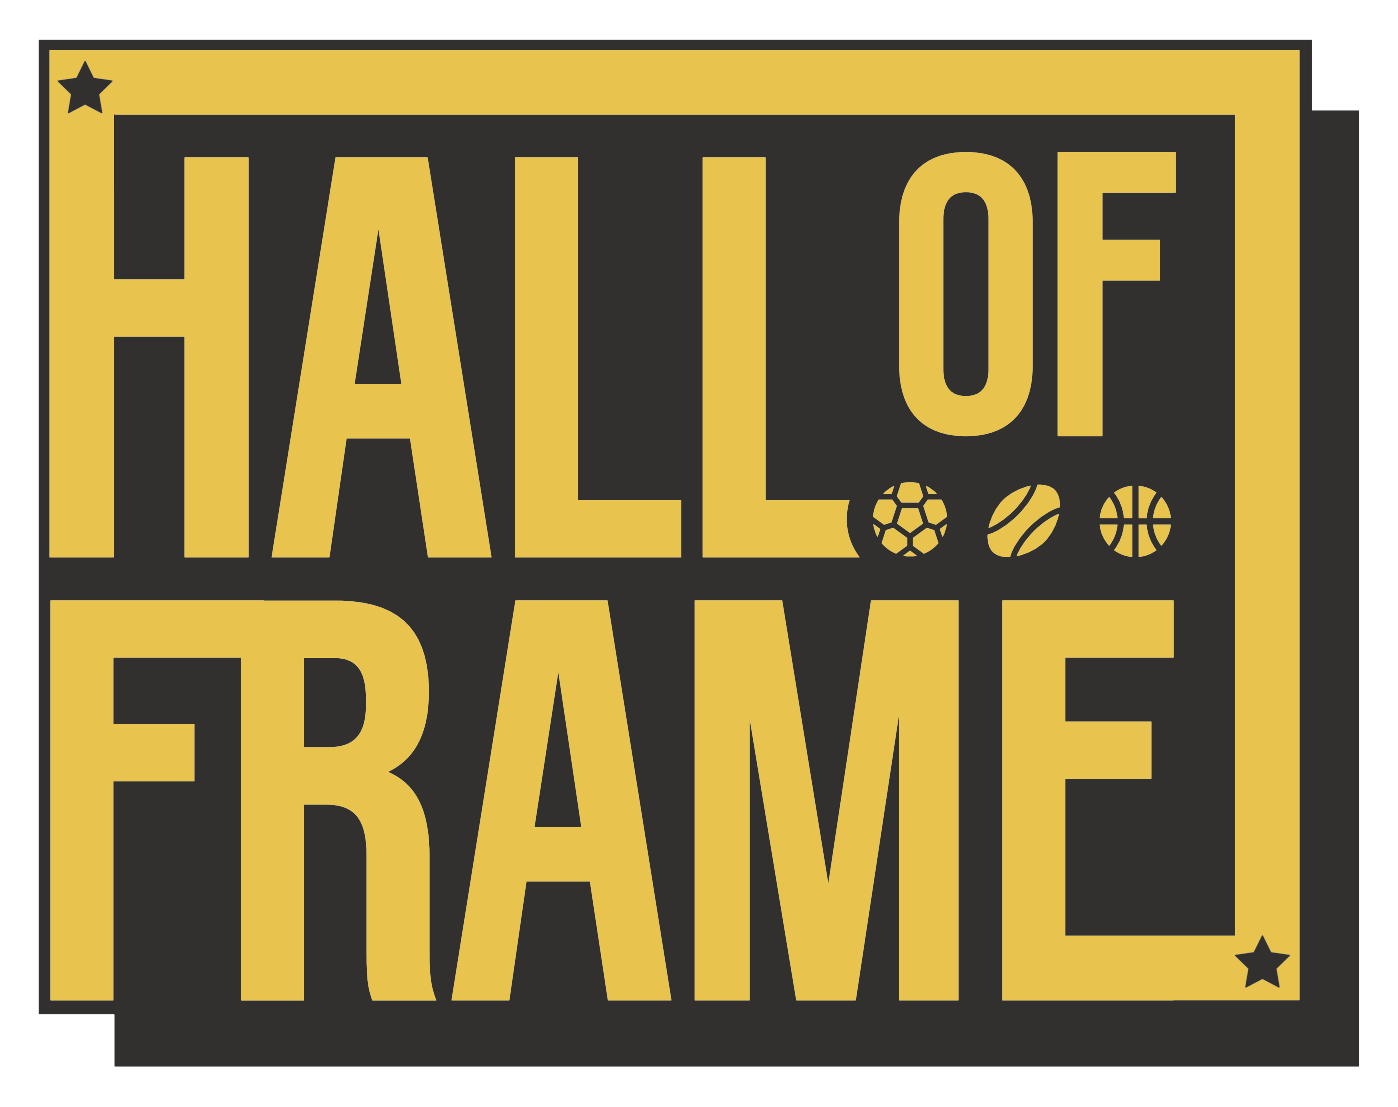 Hall of Frame